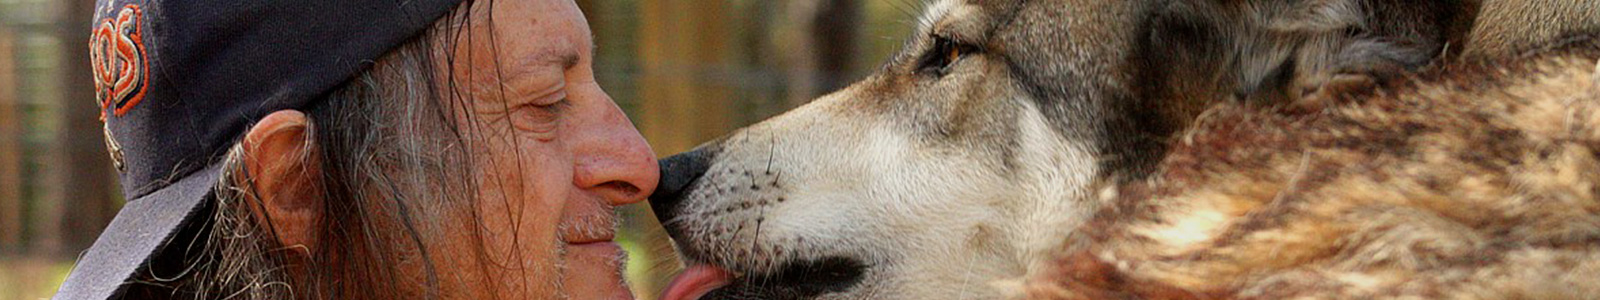 Texas Wolfdog Project Courtesy Listing Header Image